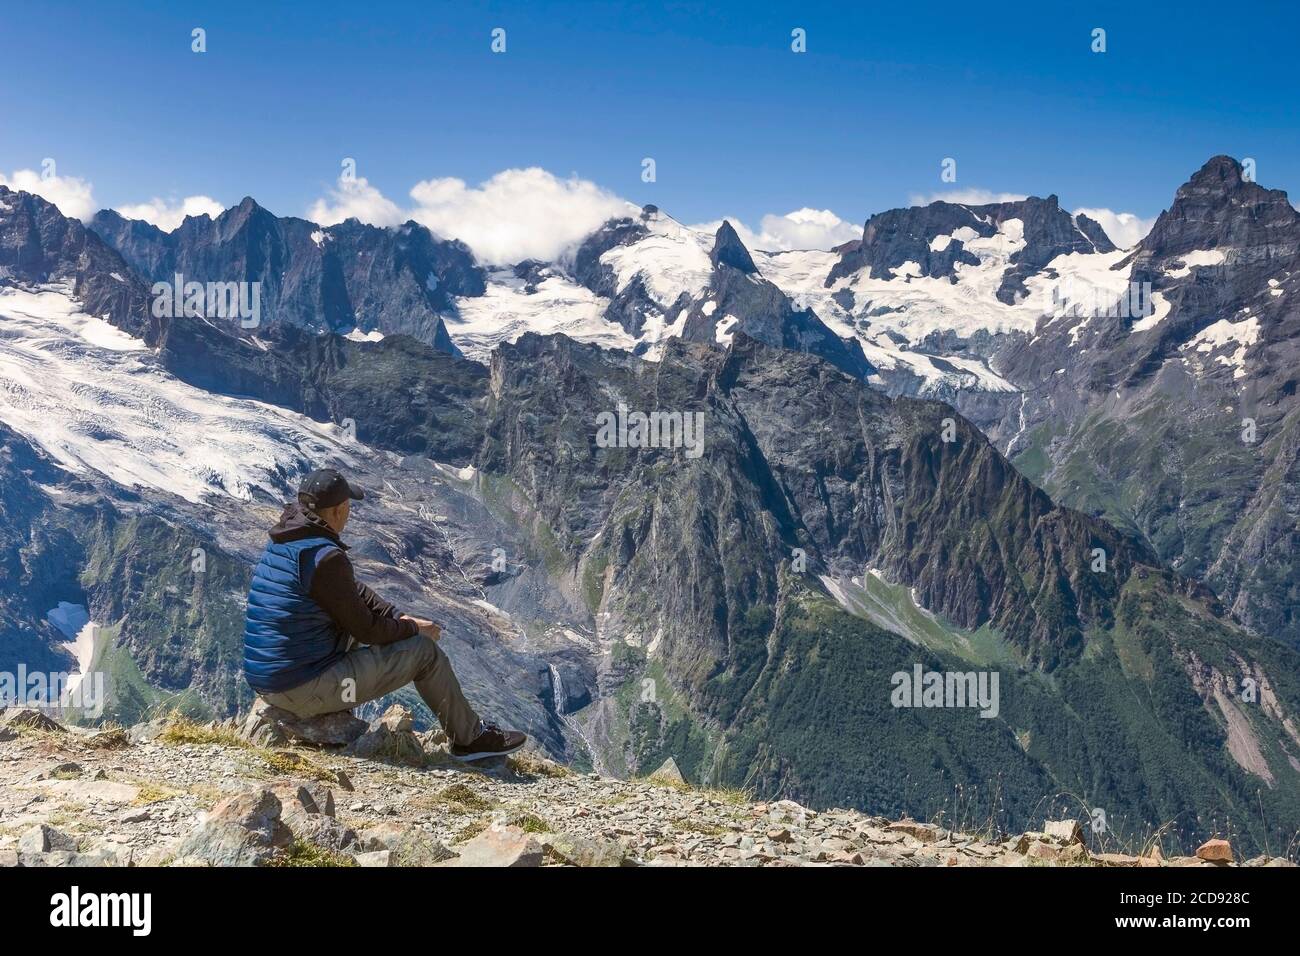 Mann am Rande des Abgrunds vor dem Hintergrund der Berggipfel im Schnee und blauen Himmel mit Wolken, Sommer sonnigen Tag Stockfoto